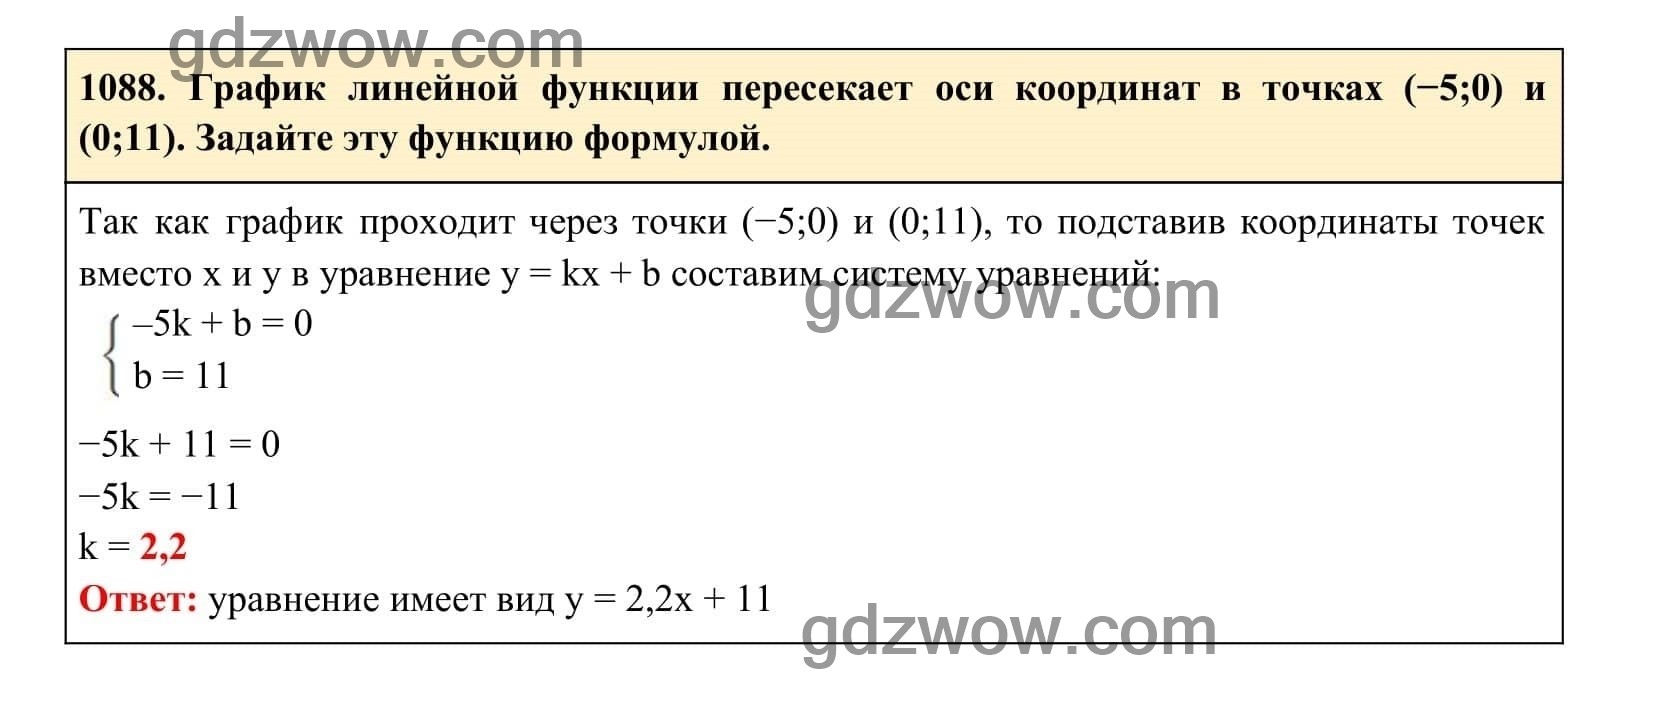 Упражнение 1088 - ГДЗ по Алгебре 7 класс Учебник Макарычев (решебник) - GDZwow